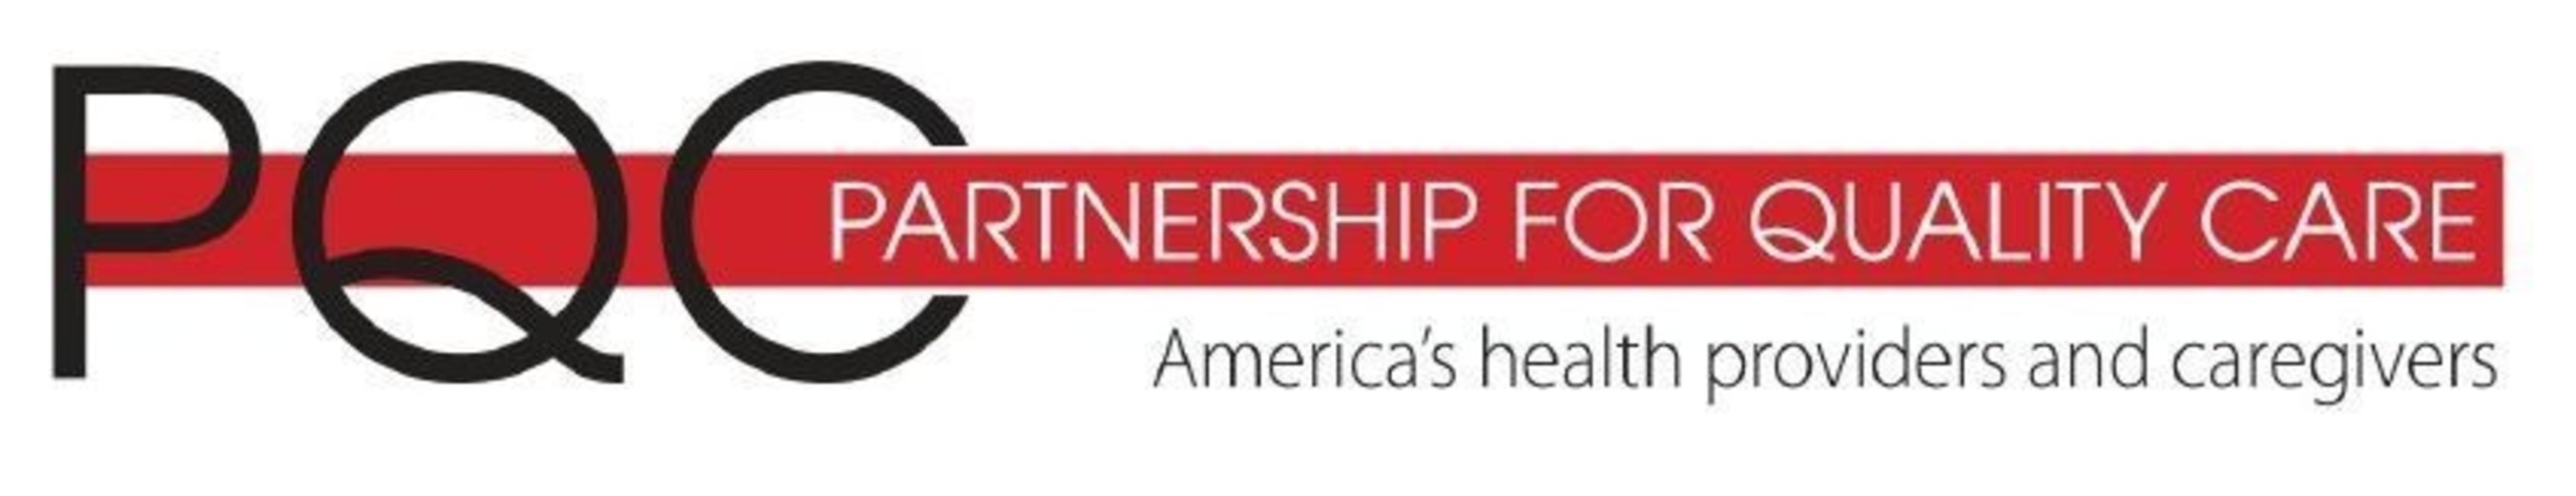 Partnership for Quality Care Logo